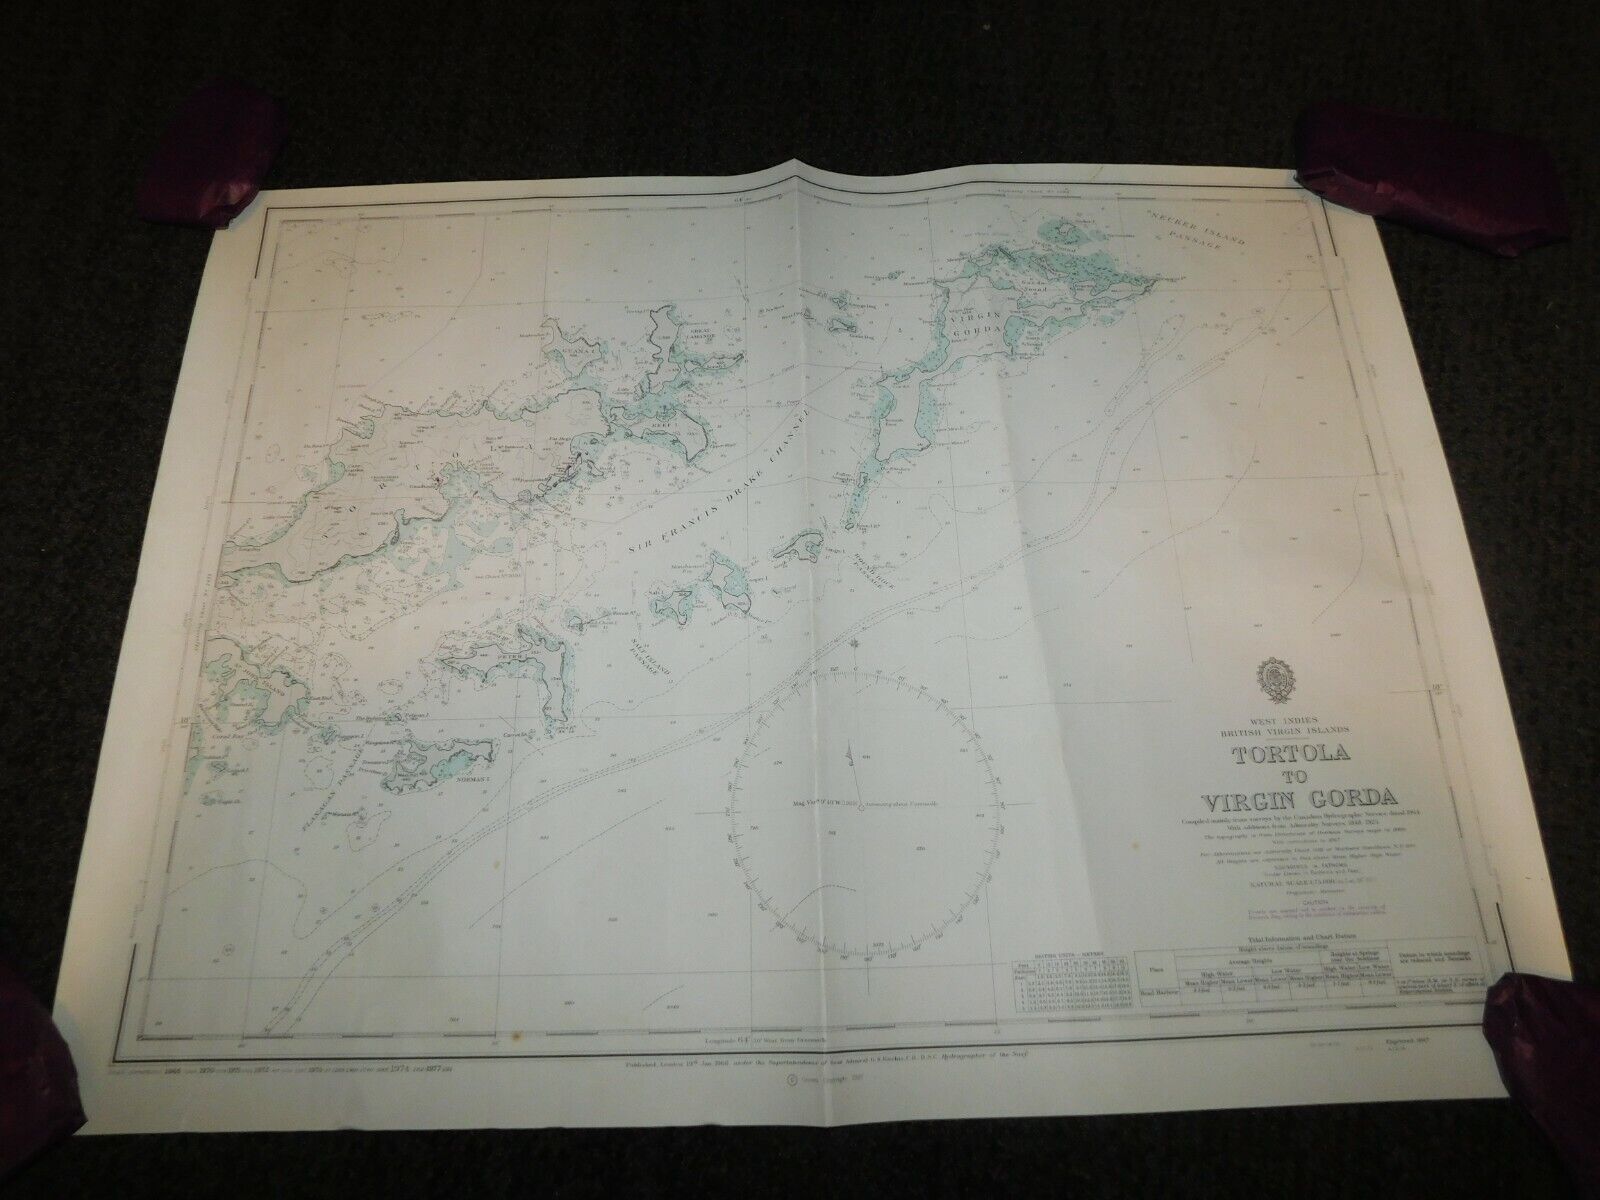 VINTAGE 1978 WEST INDIES TORTOLA to VIRGIN GORDA HYDROGRAPHIC MAP 27 3/4